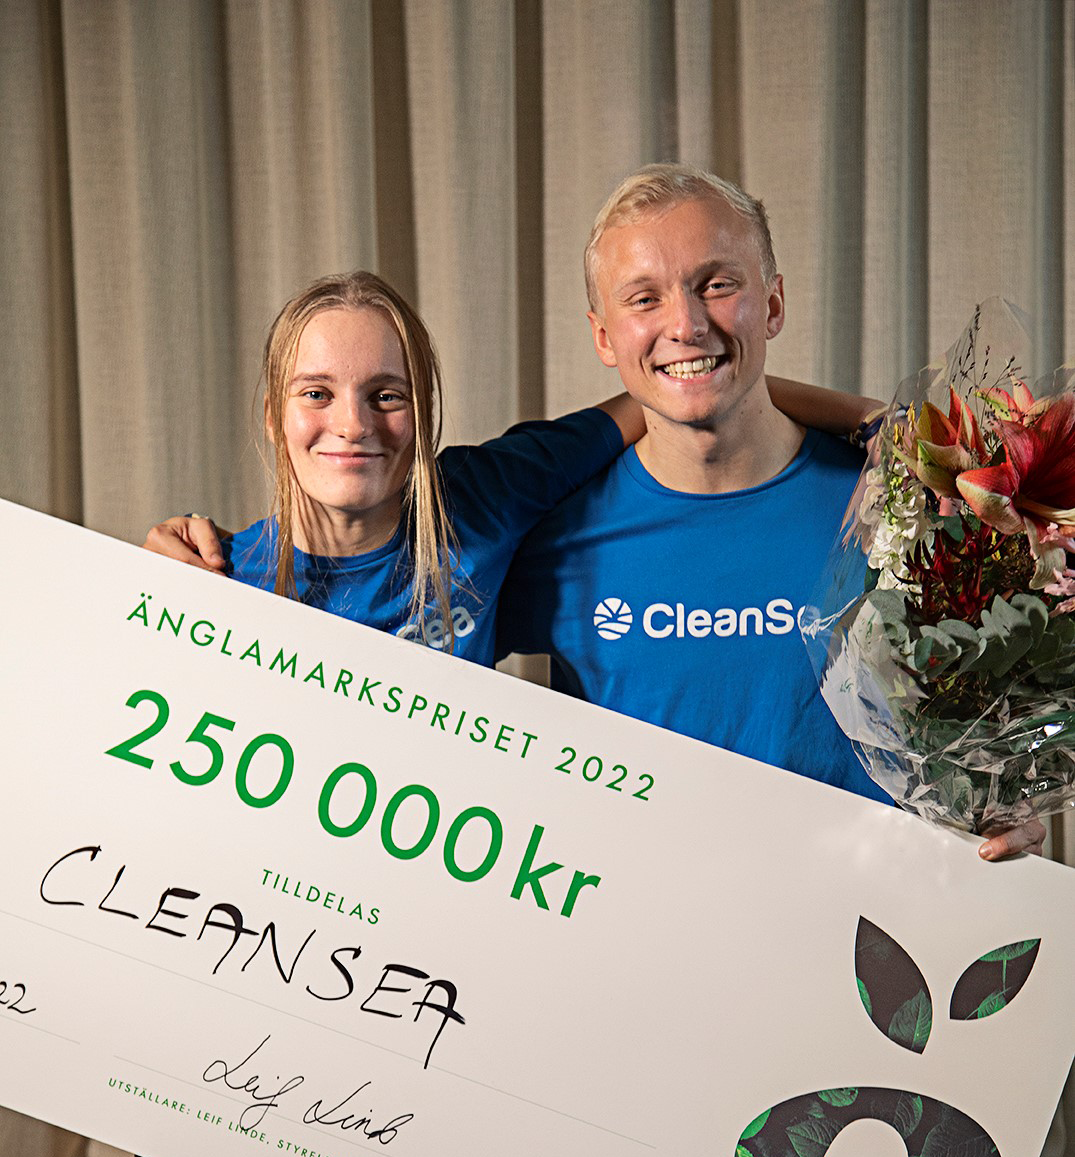 CleanSea_Änglamarkspriset2022